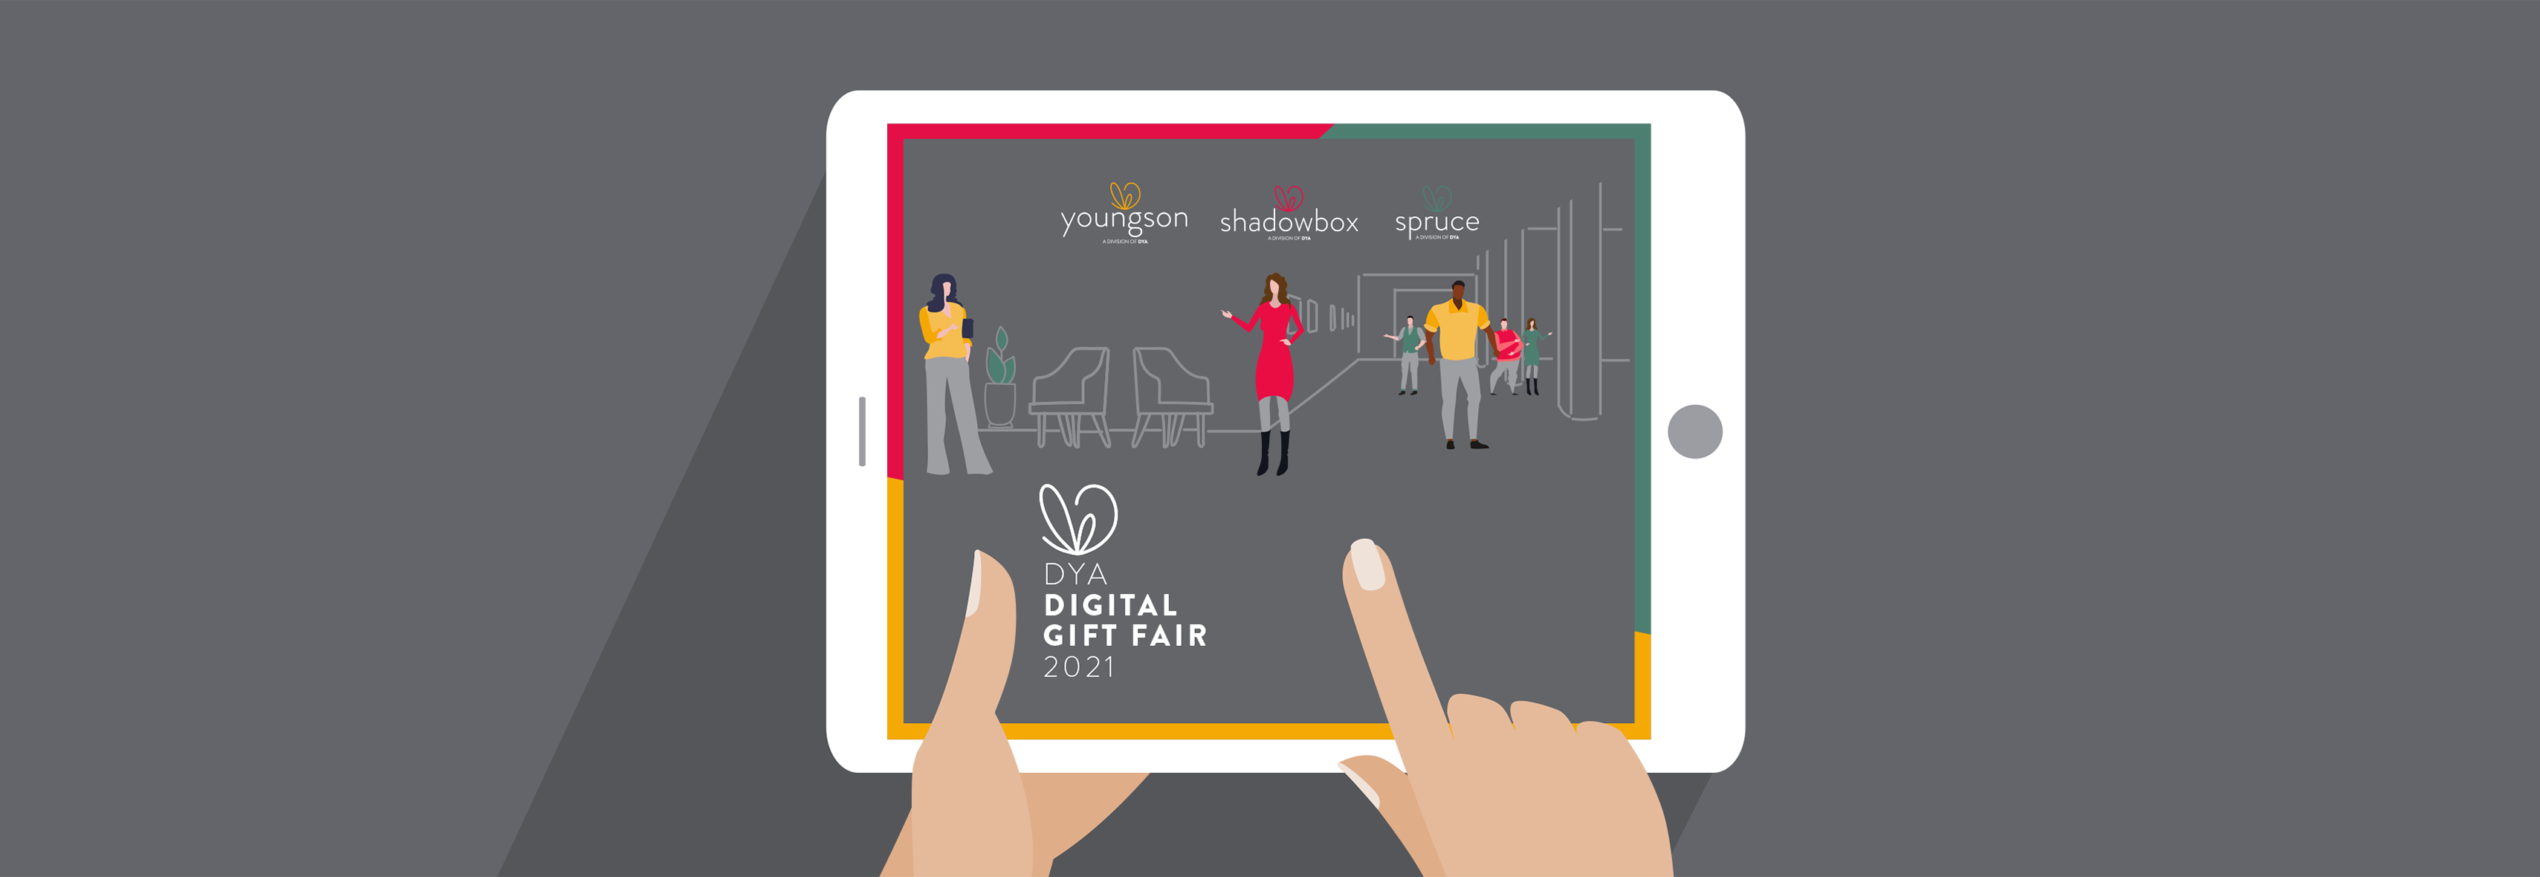 Digital Gift Fair